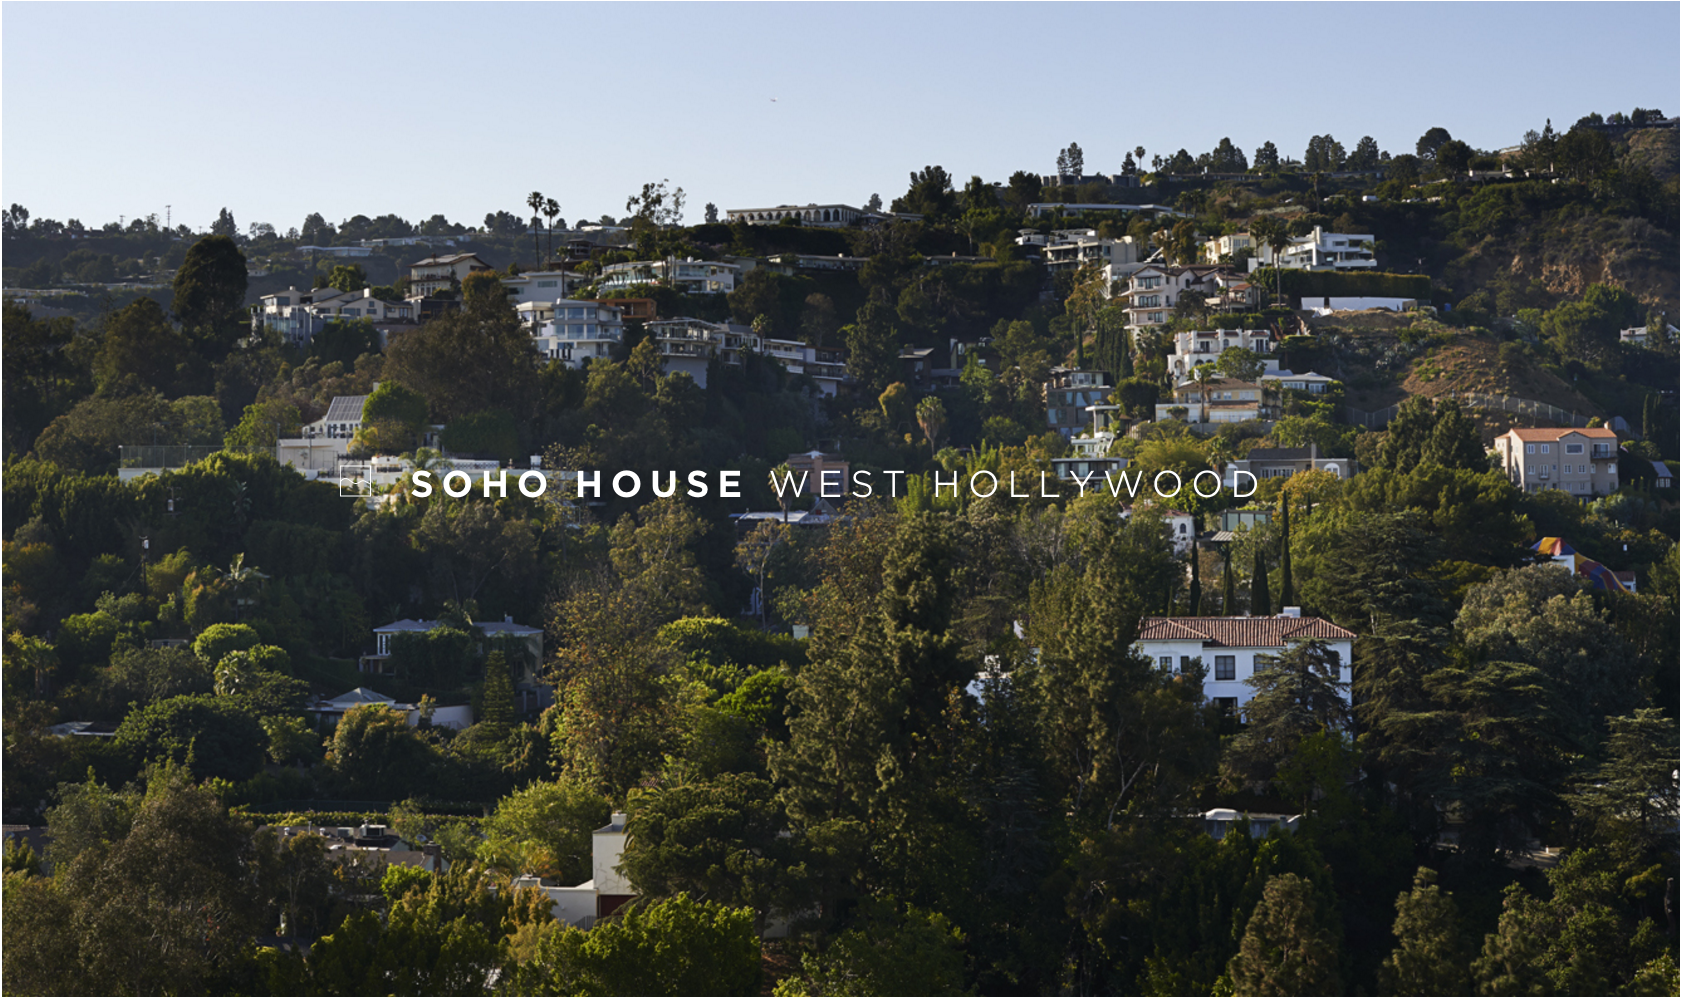 Soho House West Hollywood Remodel